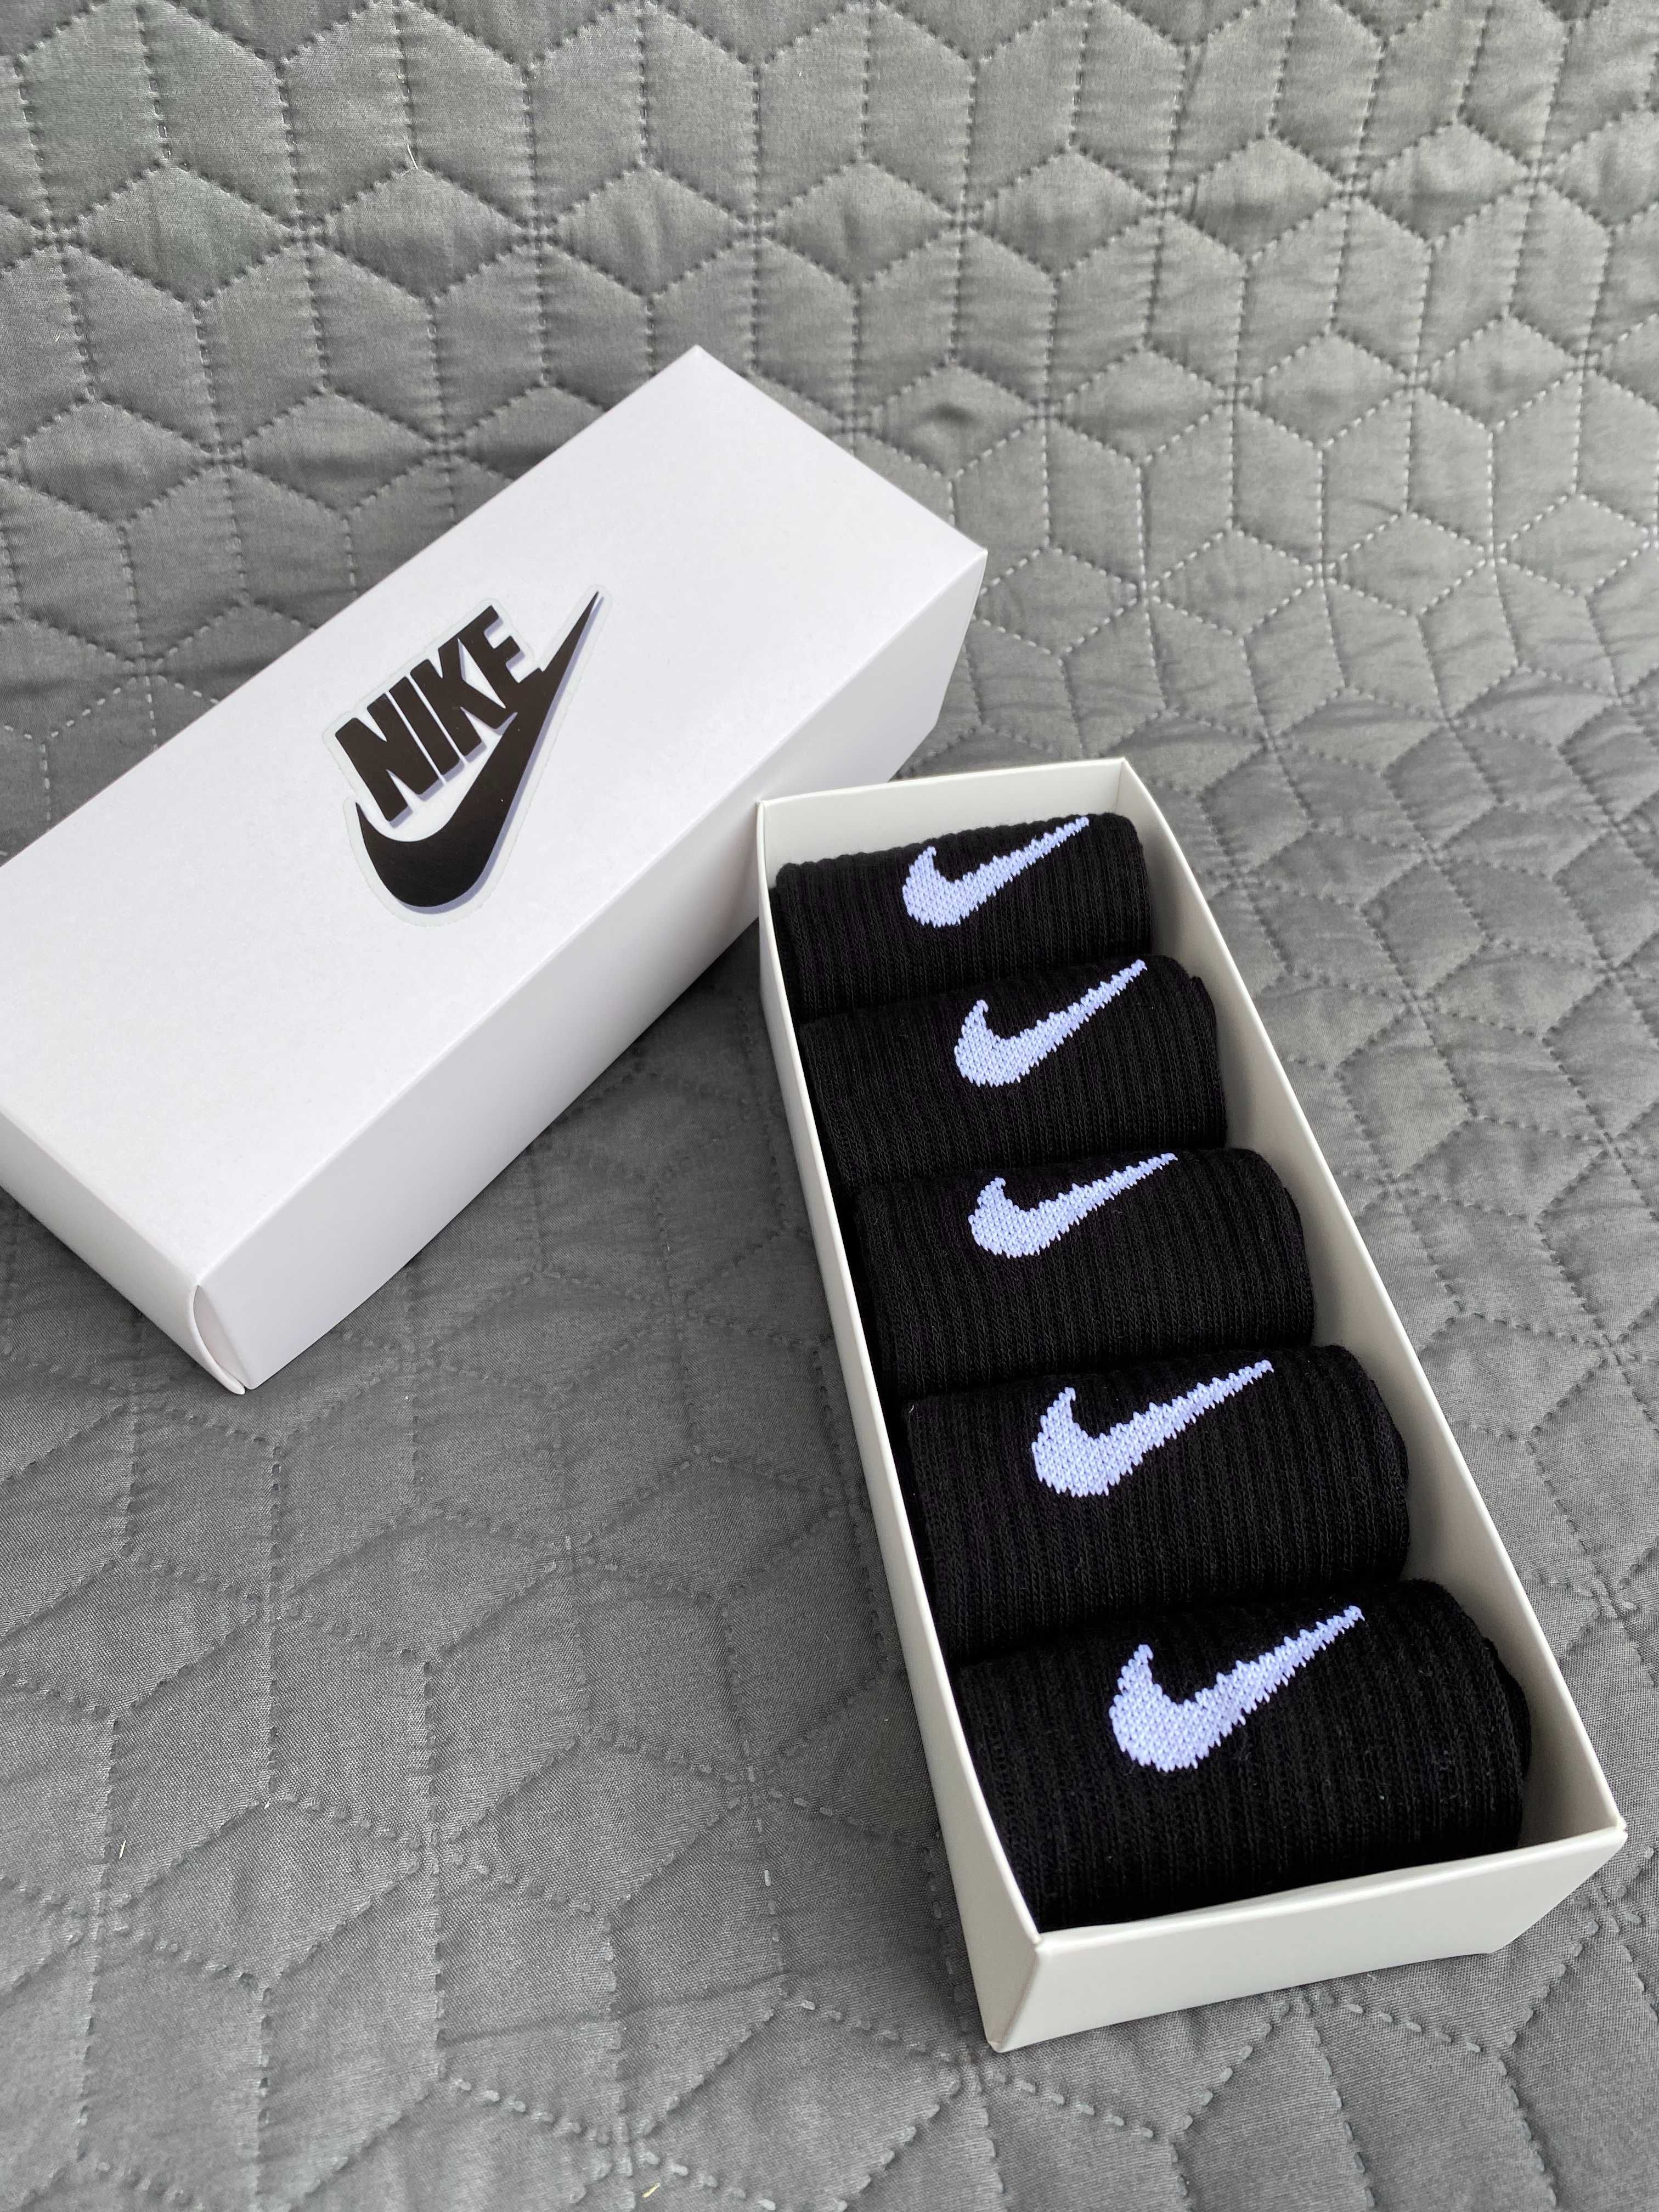 Nike високі білі шкарпетки/Шкарпетки найк у подарунковий корбці